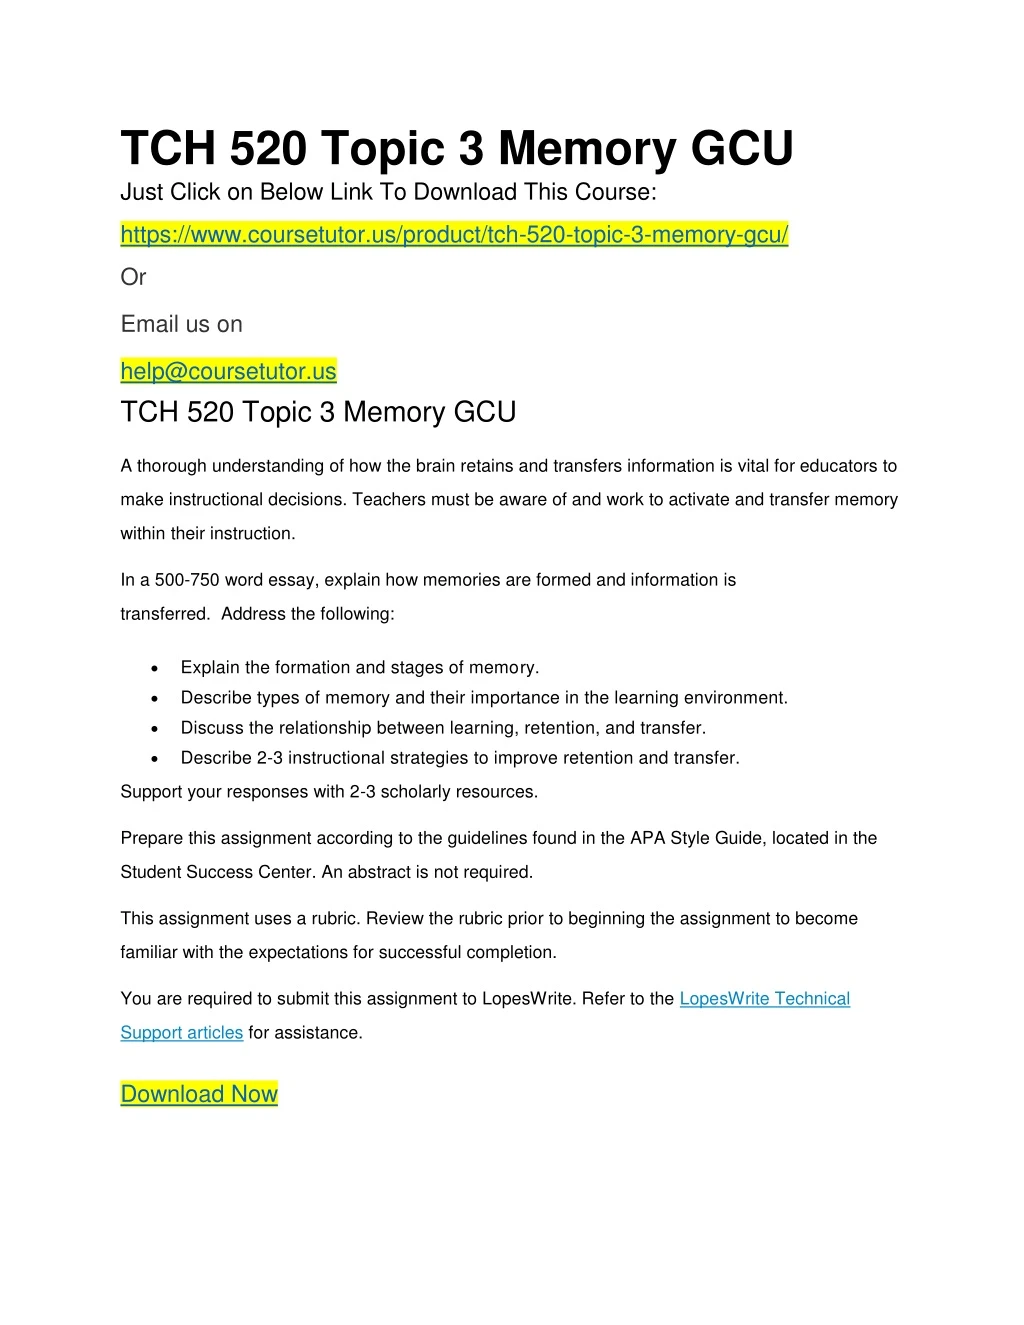 tch 520 topic 3 memory gcu just click on below